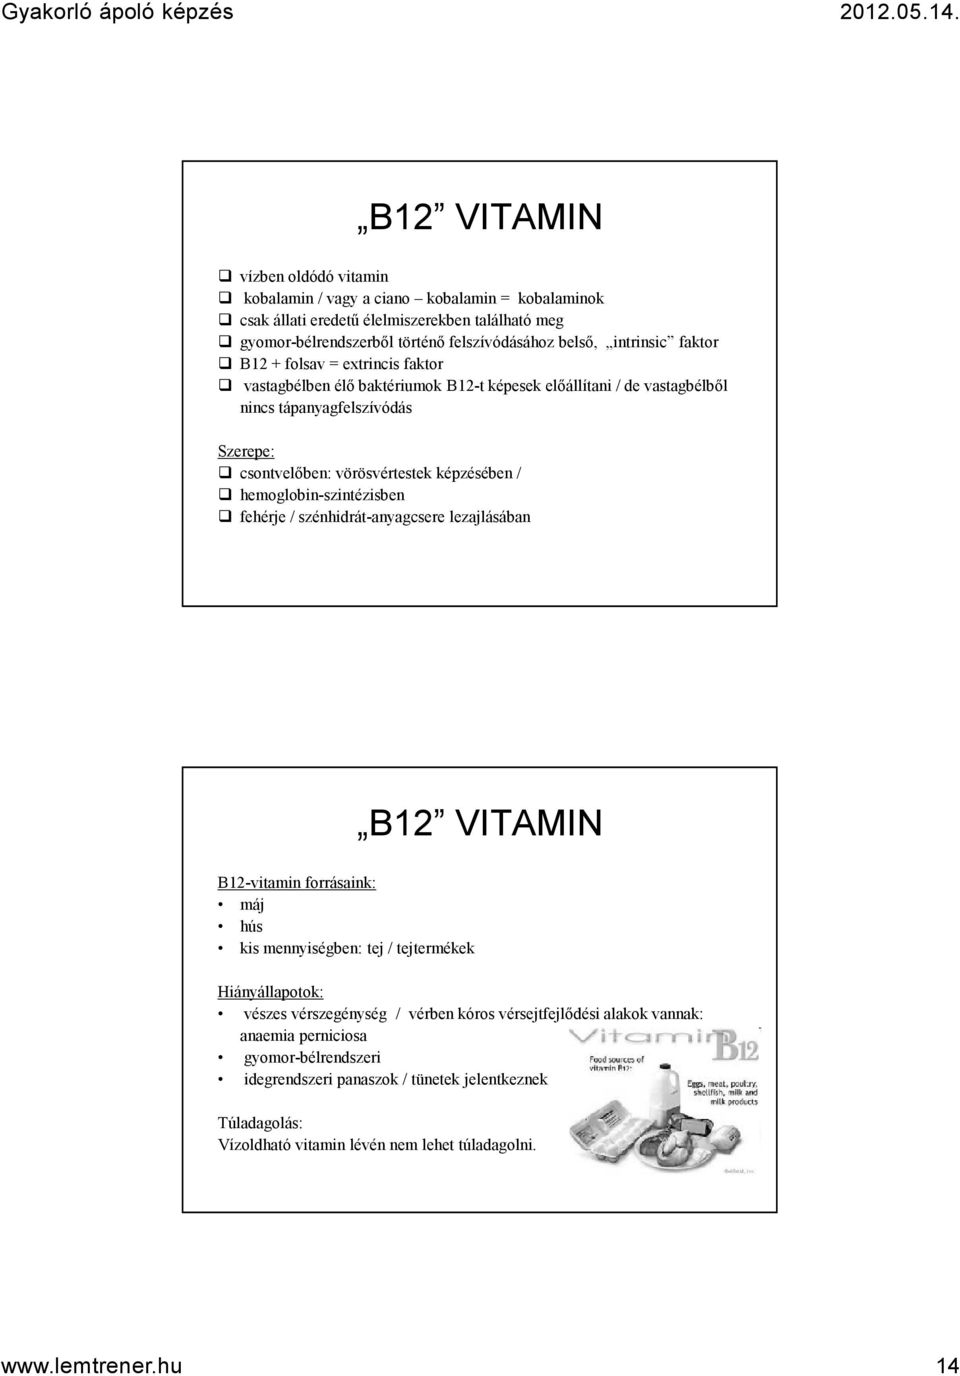 hemoglobin-szintézisben fehérje / szénhidrát-anyagcsere lezajlásában B12 VITAMIN B12-vitamin forrásaink: máj hús kis mennyiségben: tej / tejtermékek Hiányállapotok: vészes vérszegénység / vérben